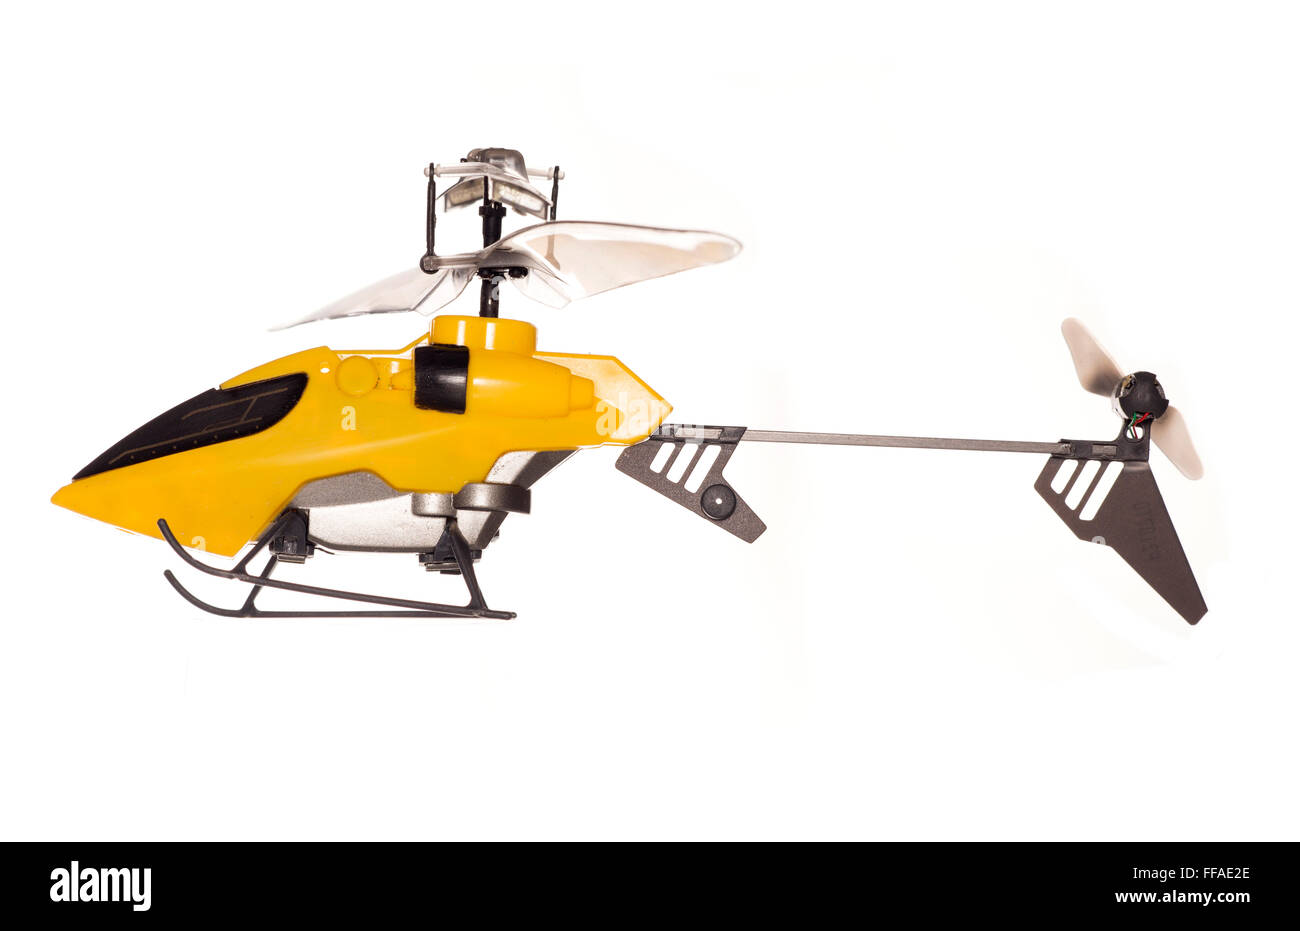 Ferngesteuerte Helikopter Spielzeug Studio Ausschnitt Stockfotografie -  Alamy